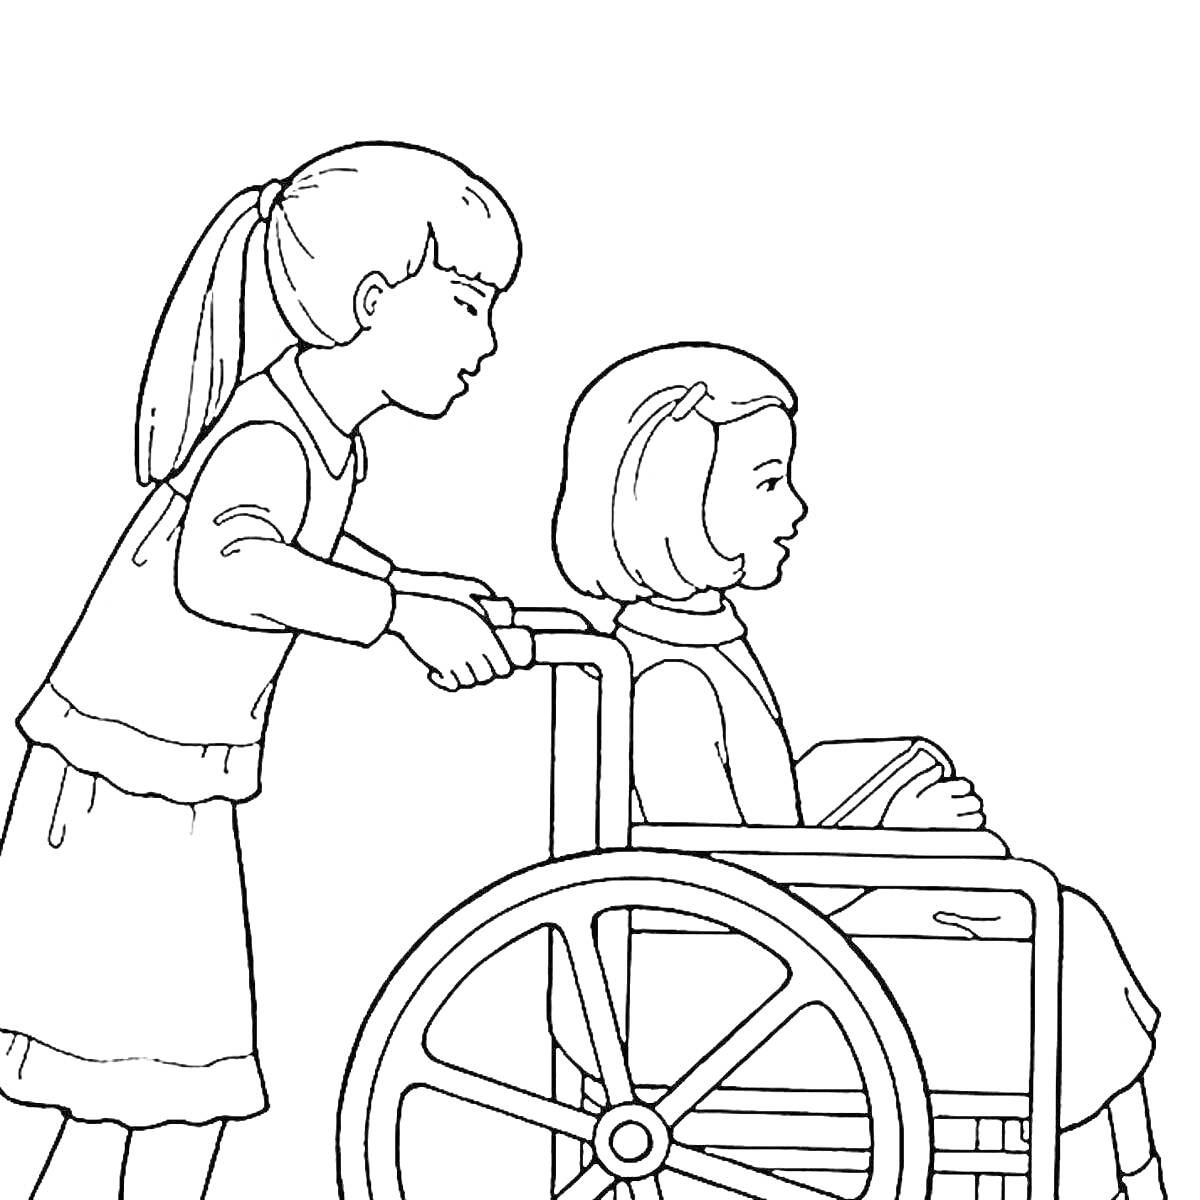 На раскраске изображено: Девочка, Инвалидное кресло, Помощь, Доброта, Забота, Милосердие, Детство, Дружба